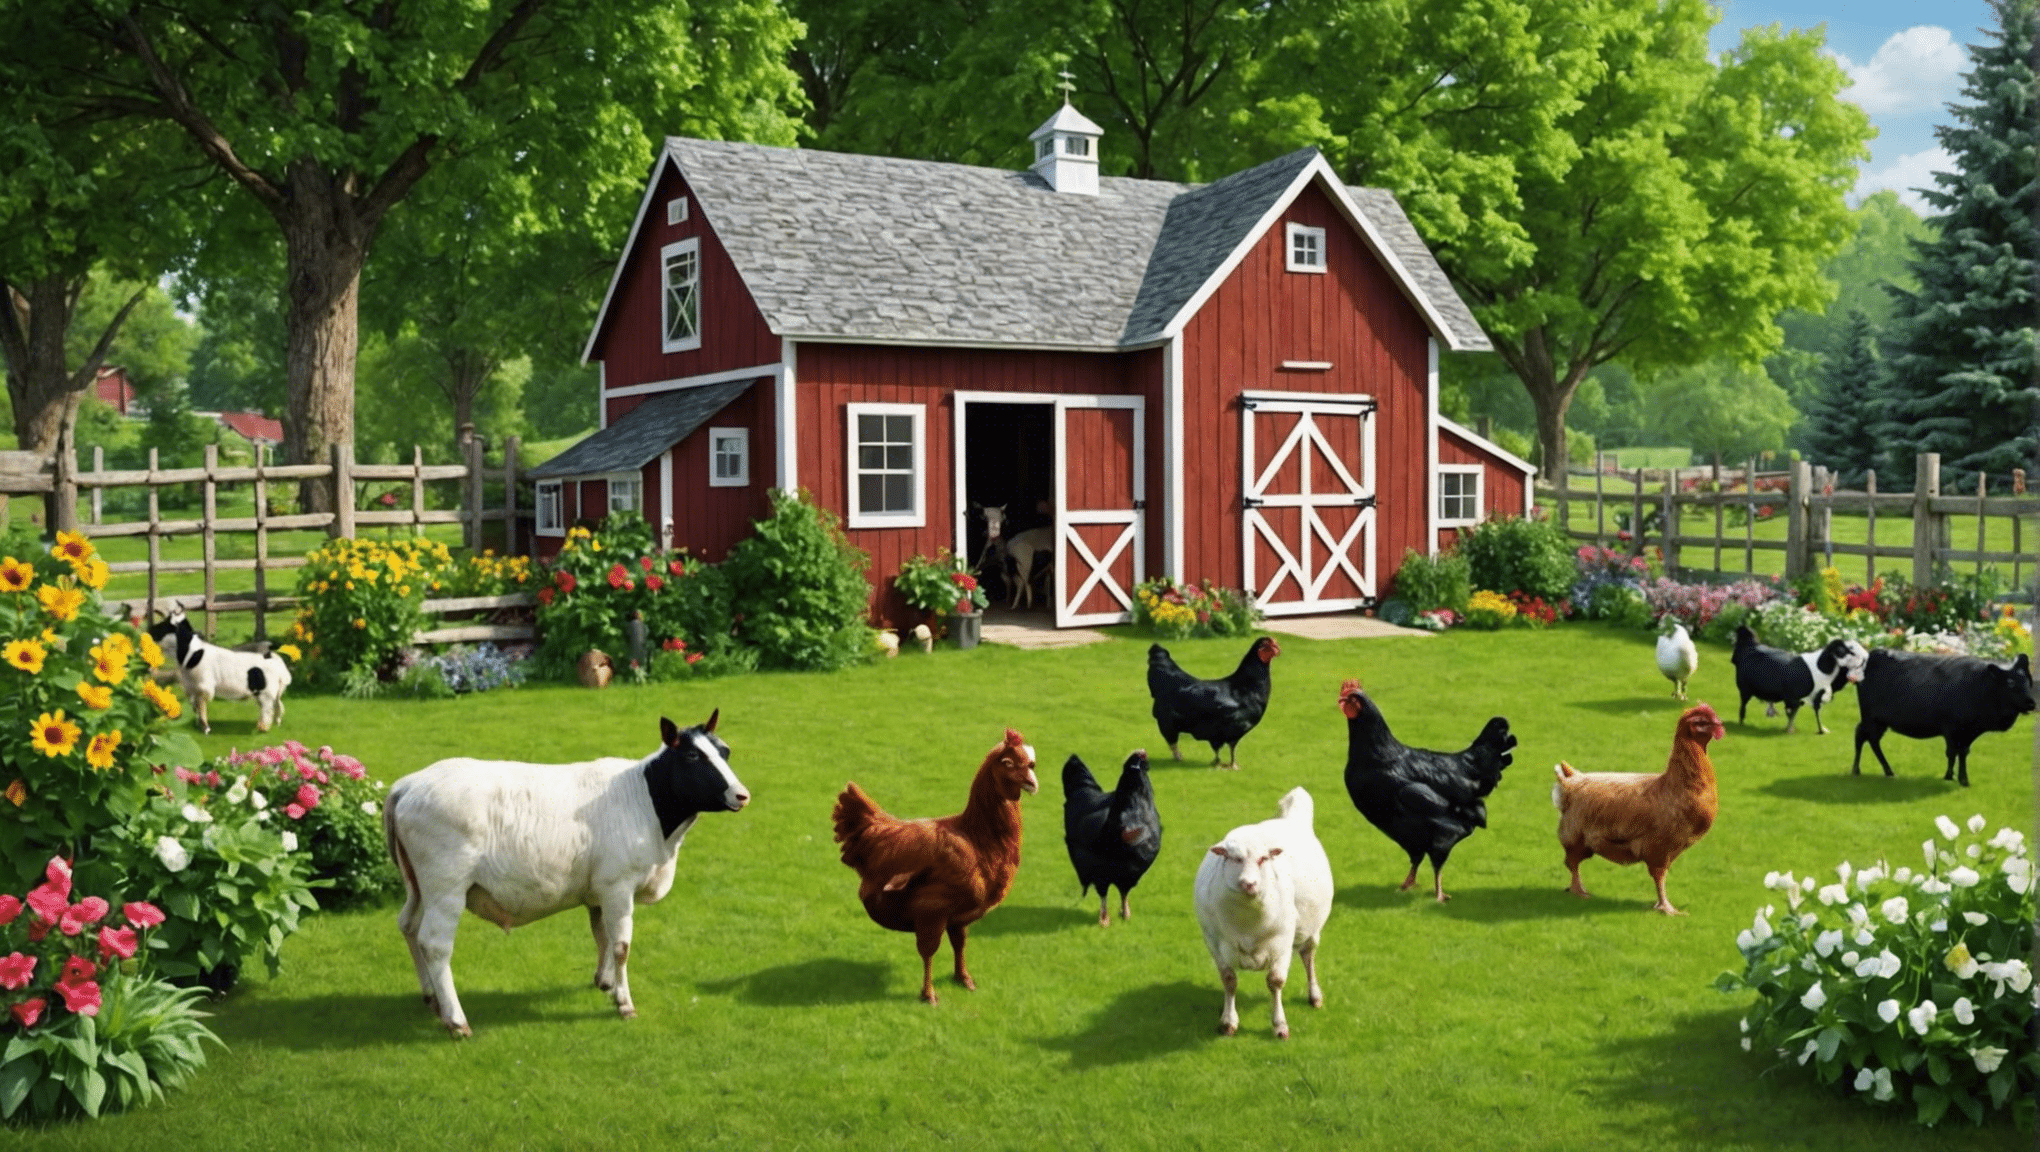 Eviniz ve aileniz için arka bahçenizde çiftlik hayvanlarına sahip olmanın faydalarını keşfedin. Arka bahçenizde çiftlik hayvanlarını yetiştirmeyi, bakımını ve tadını çıkarmayı öğrenin.